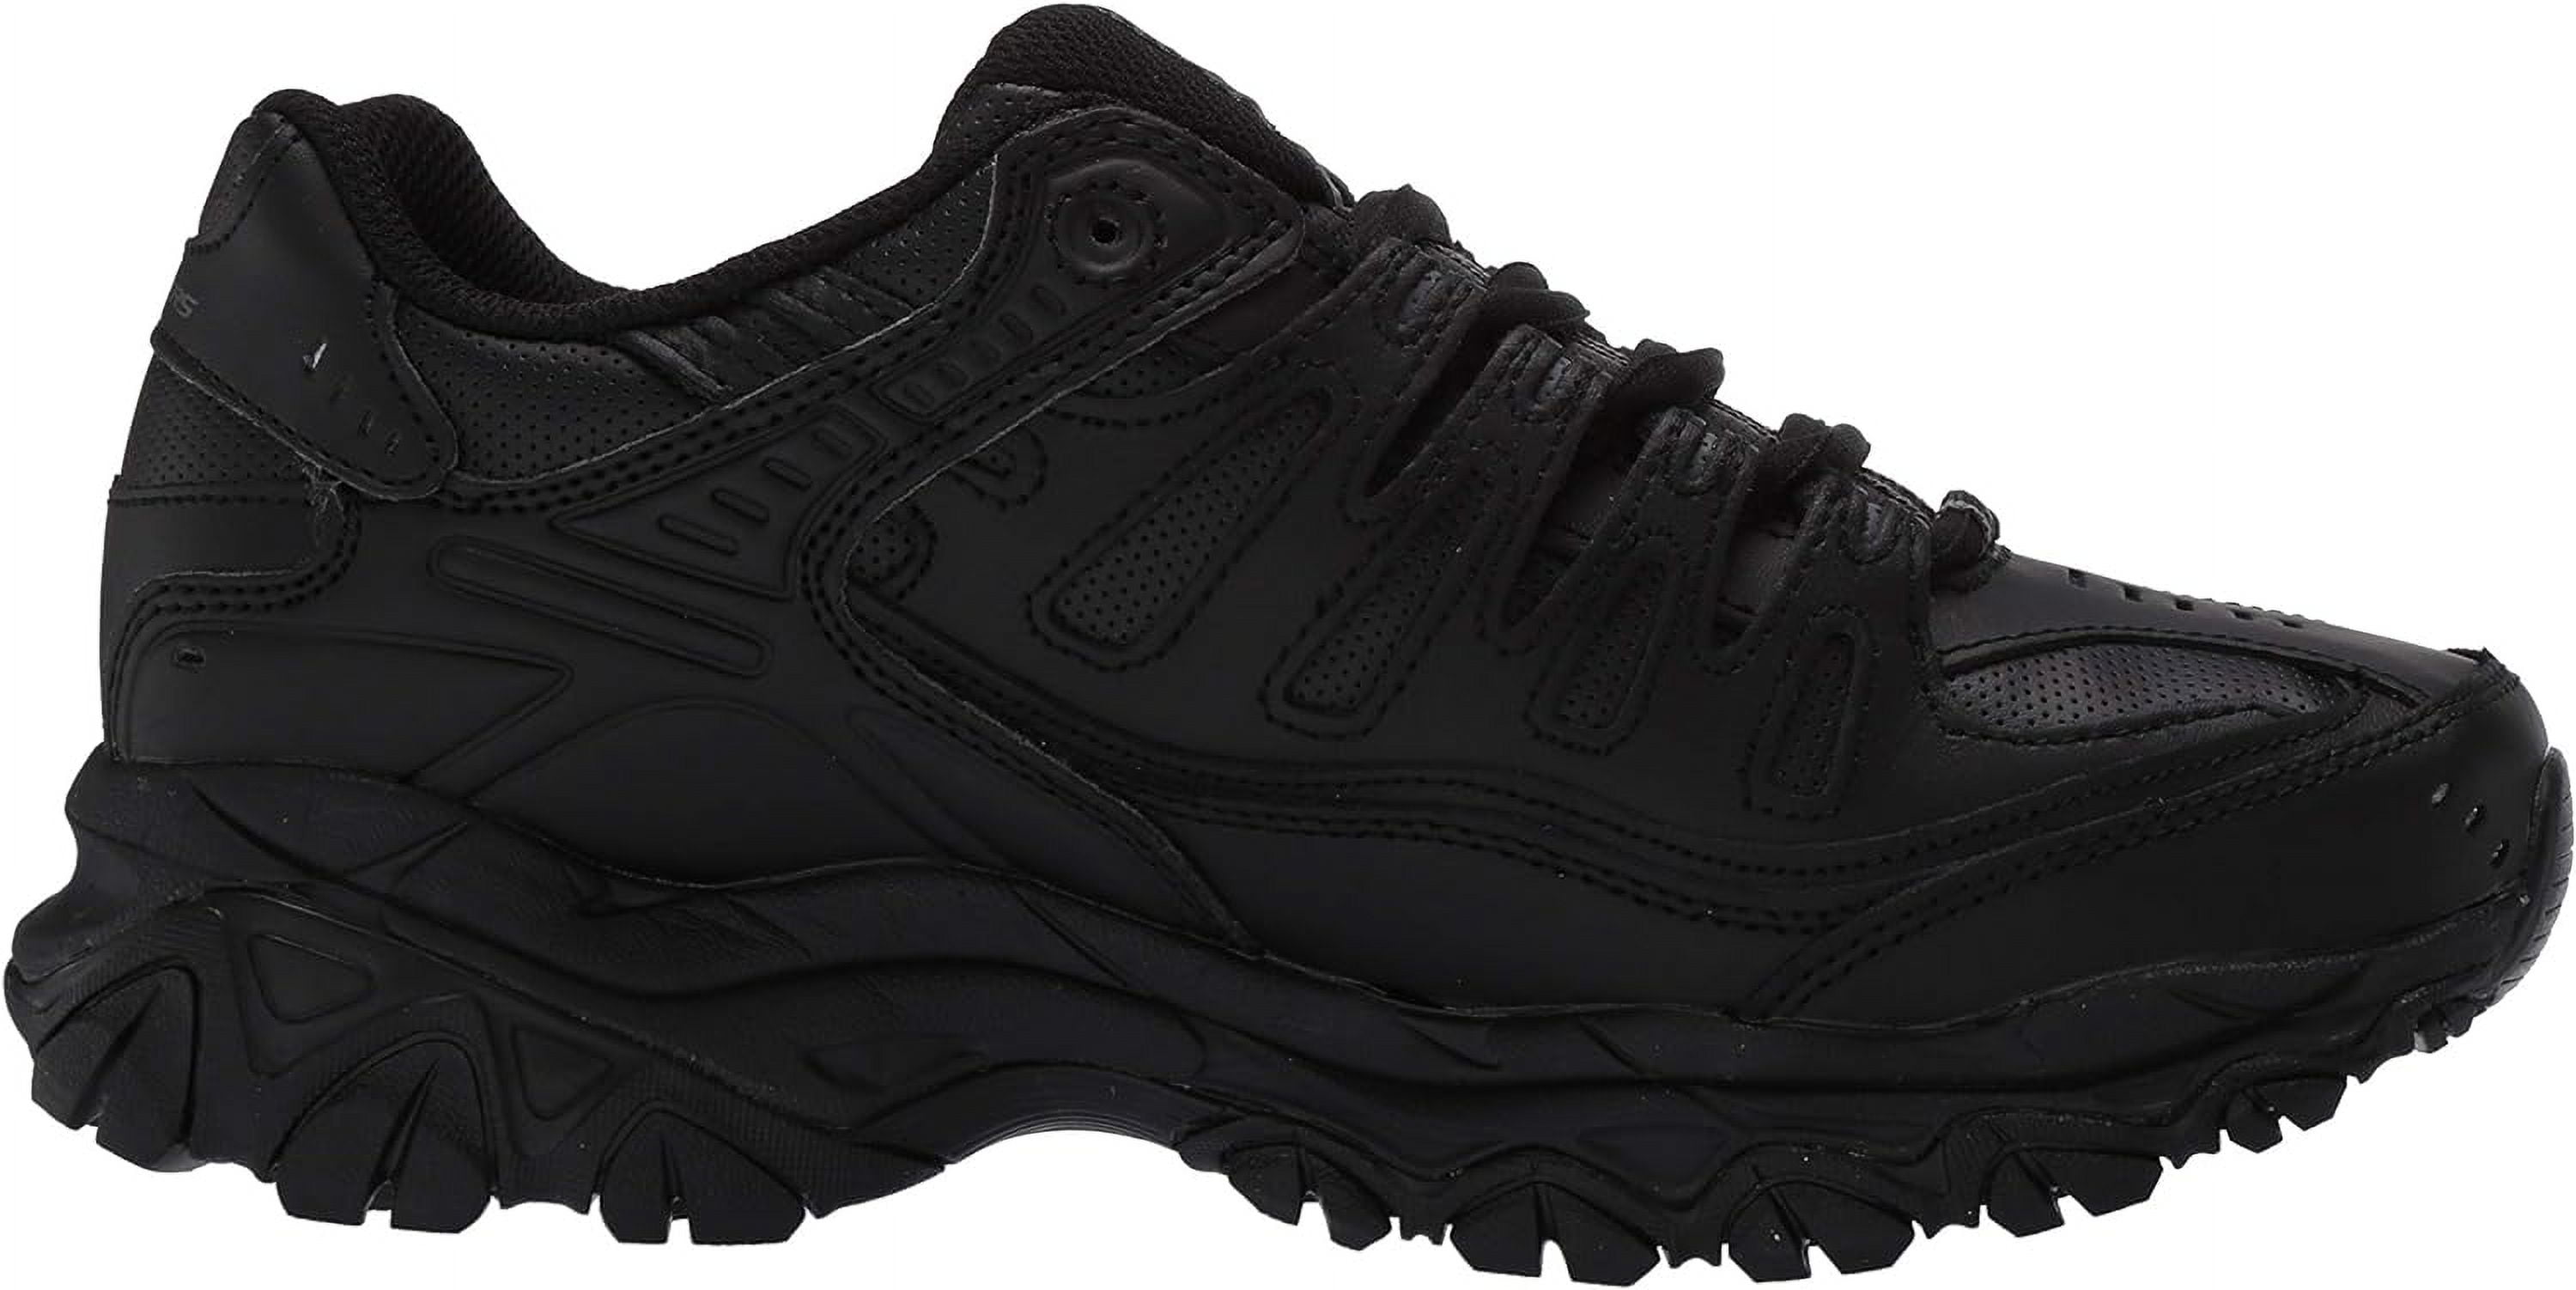 Skechers Men's After Burn - Memory Fit Shoe, Pebble/ Black, 6.5 M US :  : Clothing, Shoes & Accessories